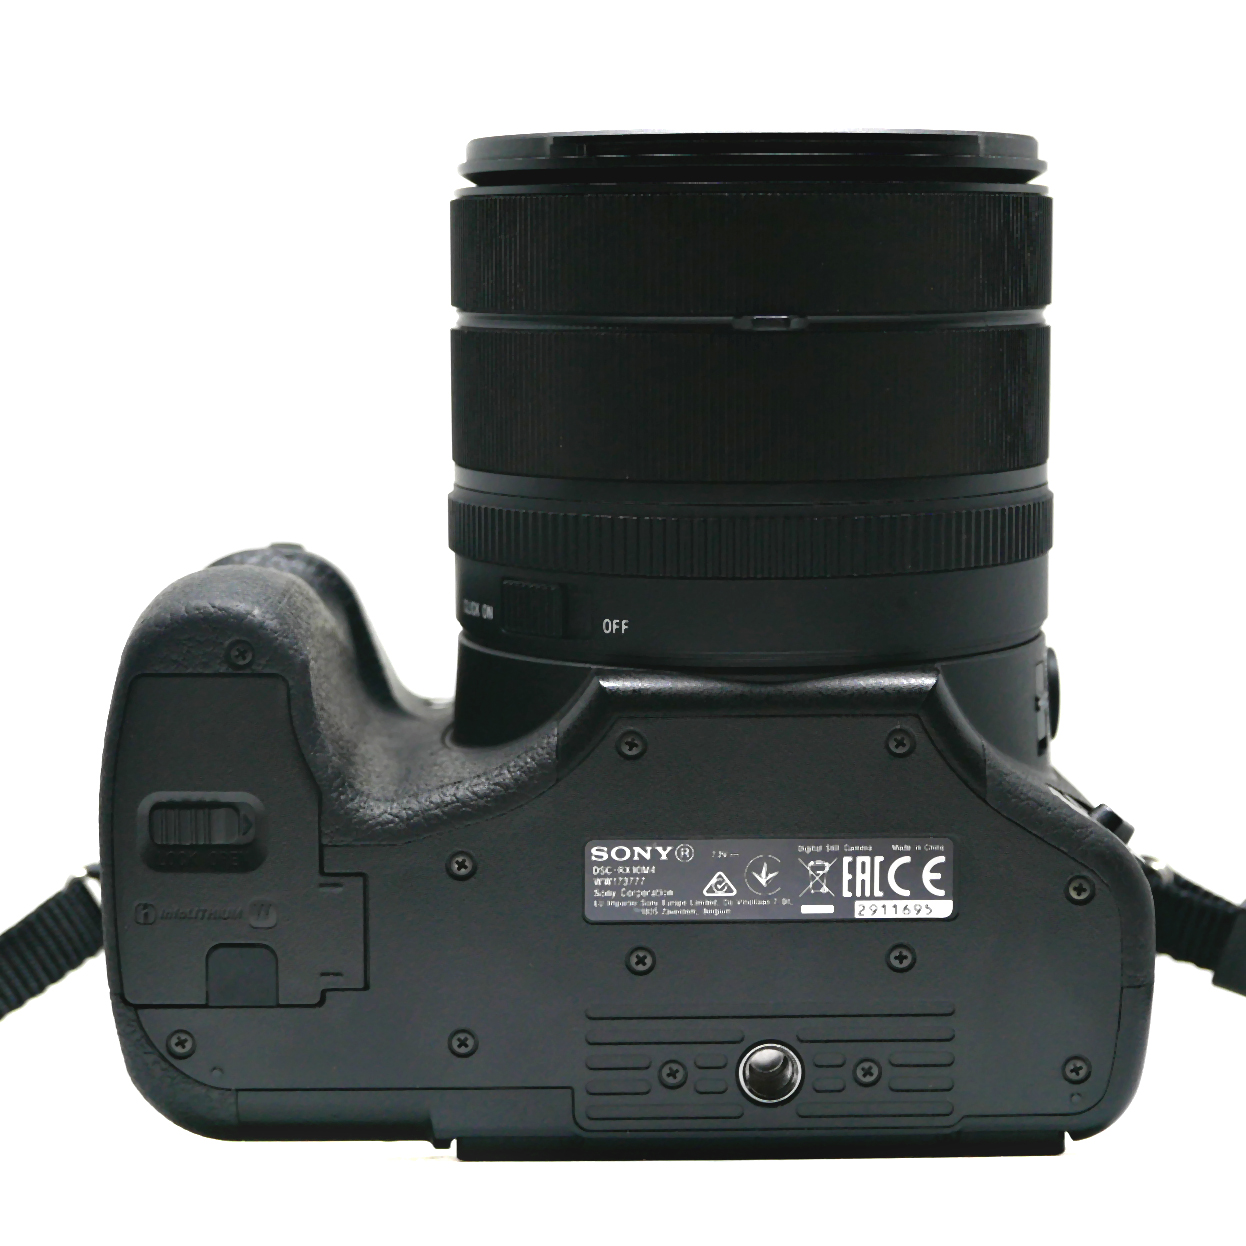 (Myyty) Sony RX10 Mark IV (käytetty) (takuu)